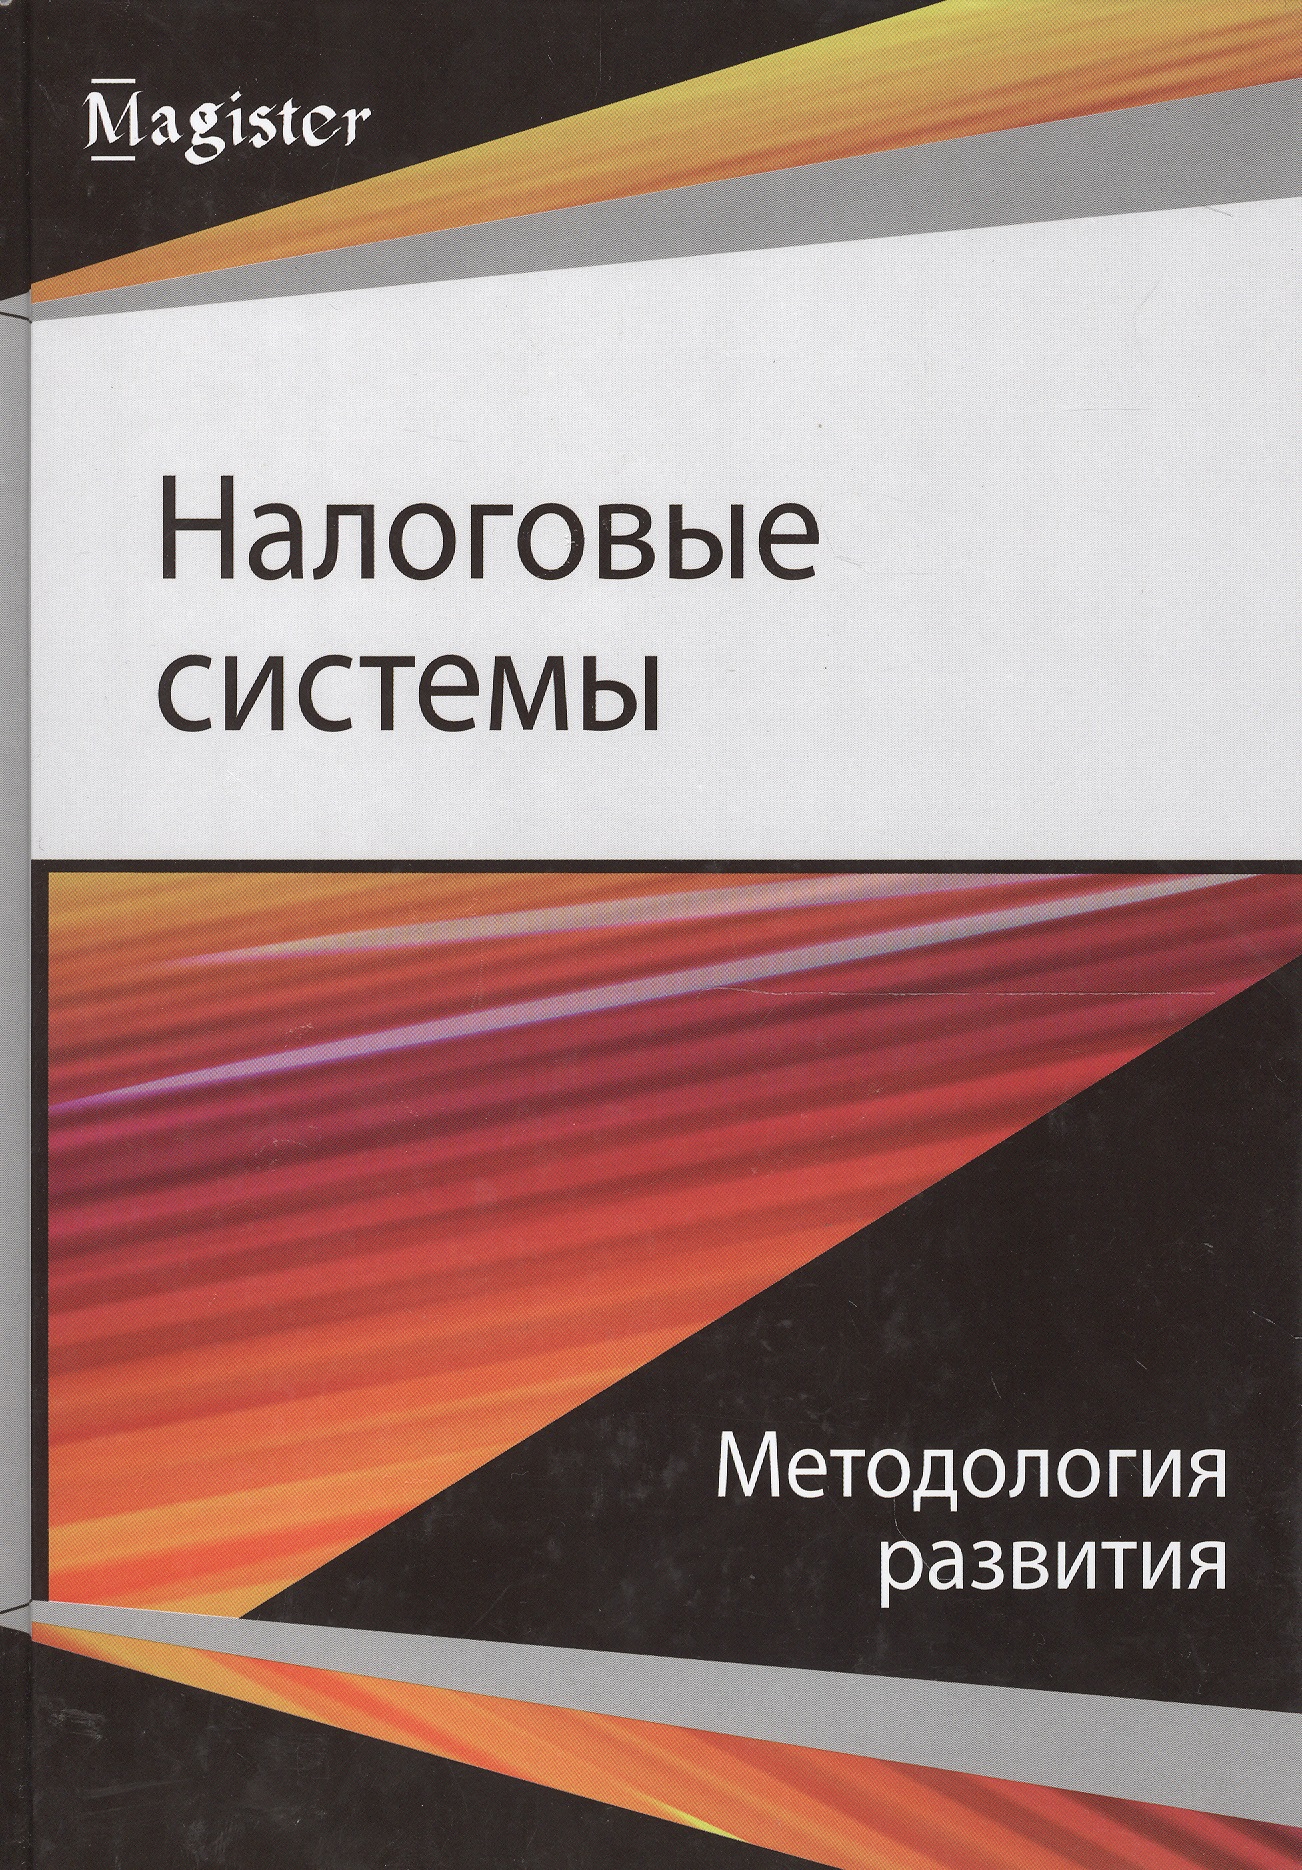  - Налоговые системы Методология развития (Magister) Майбуров